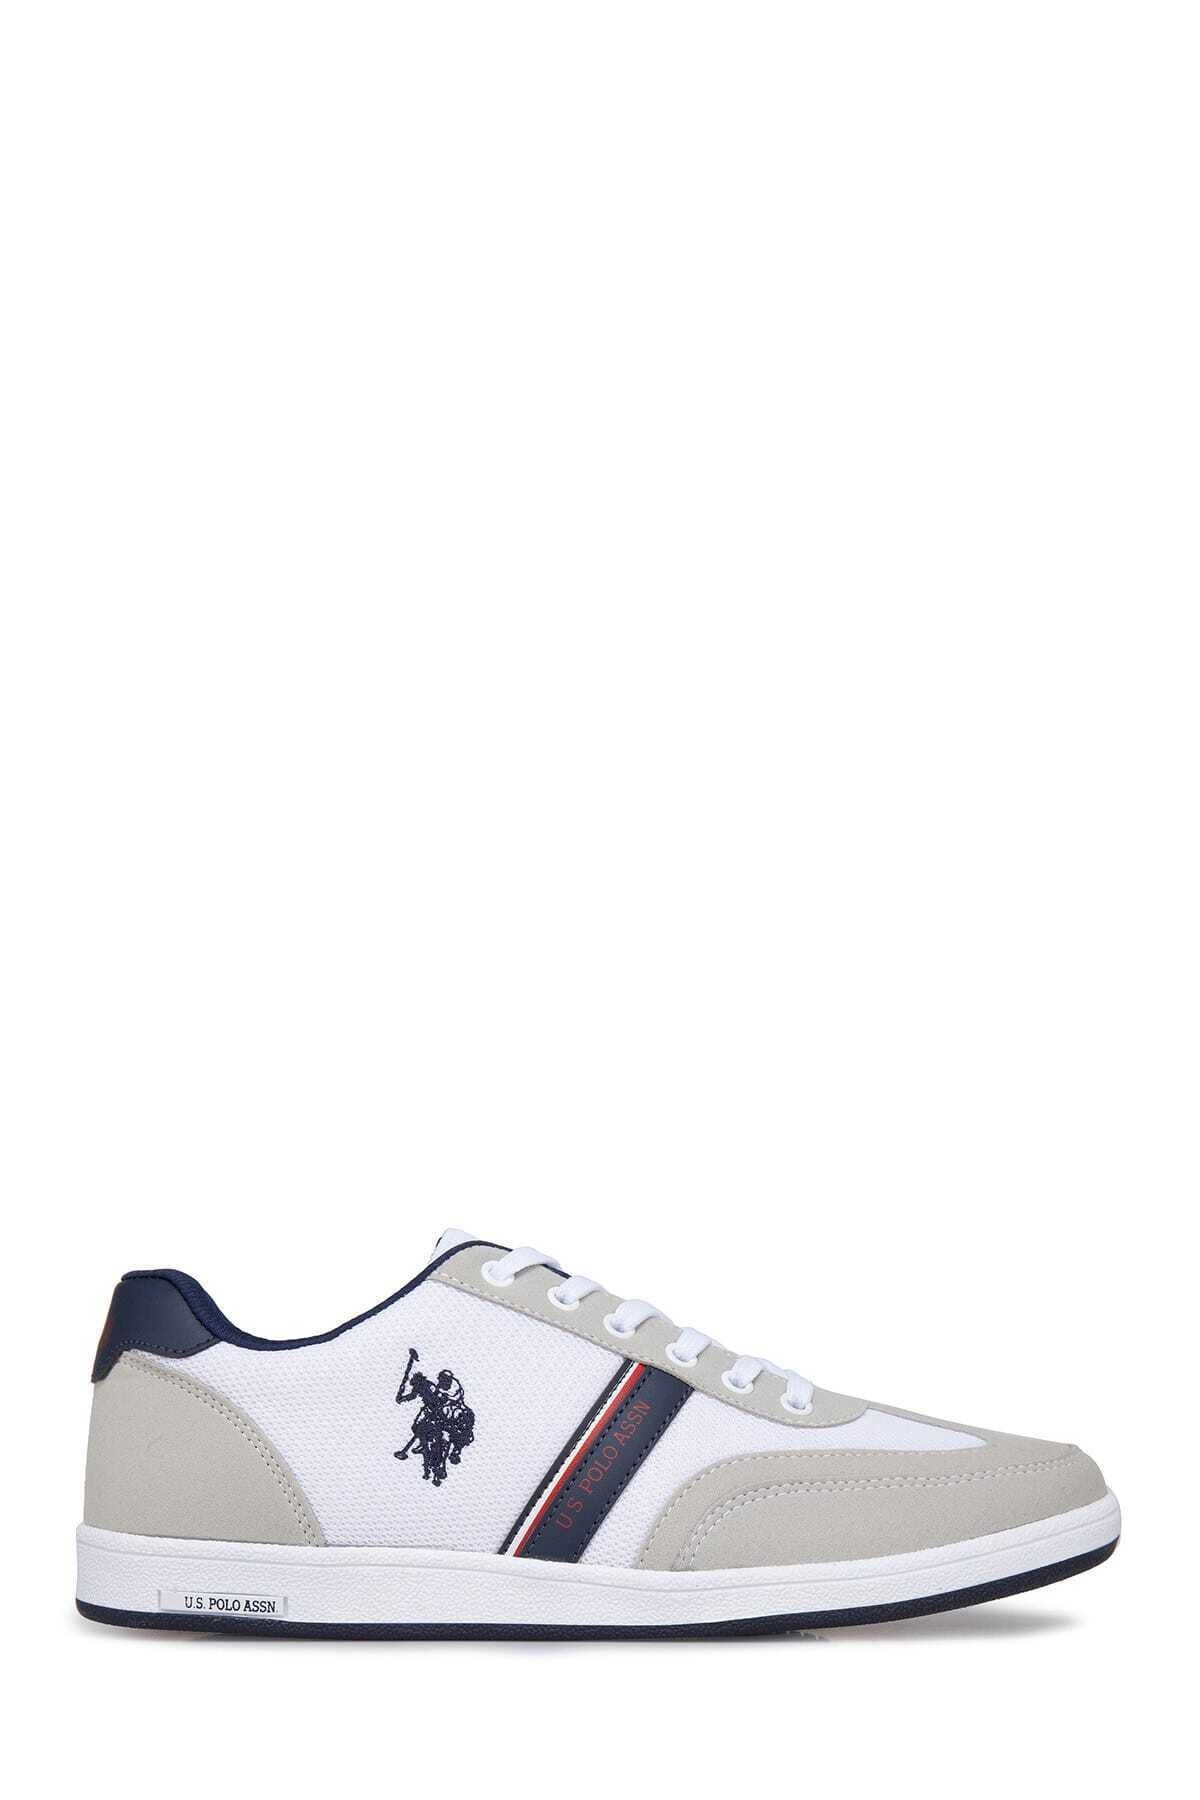 U.S. Polo Assn. KARES Beyaz Unisex Çocuk Sneaker 100241546